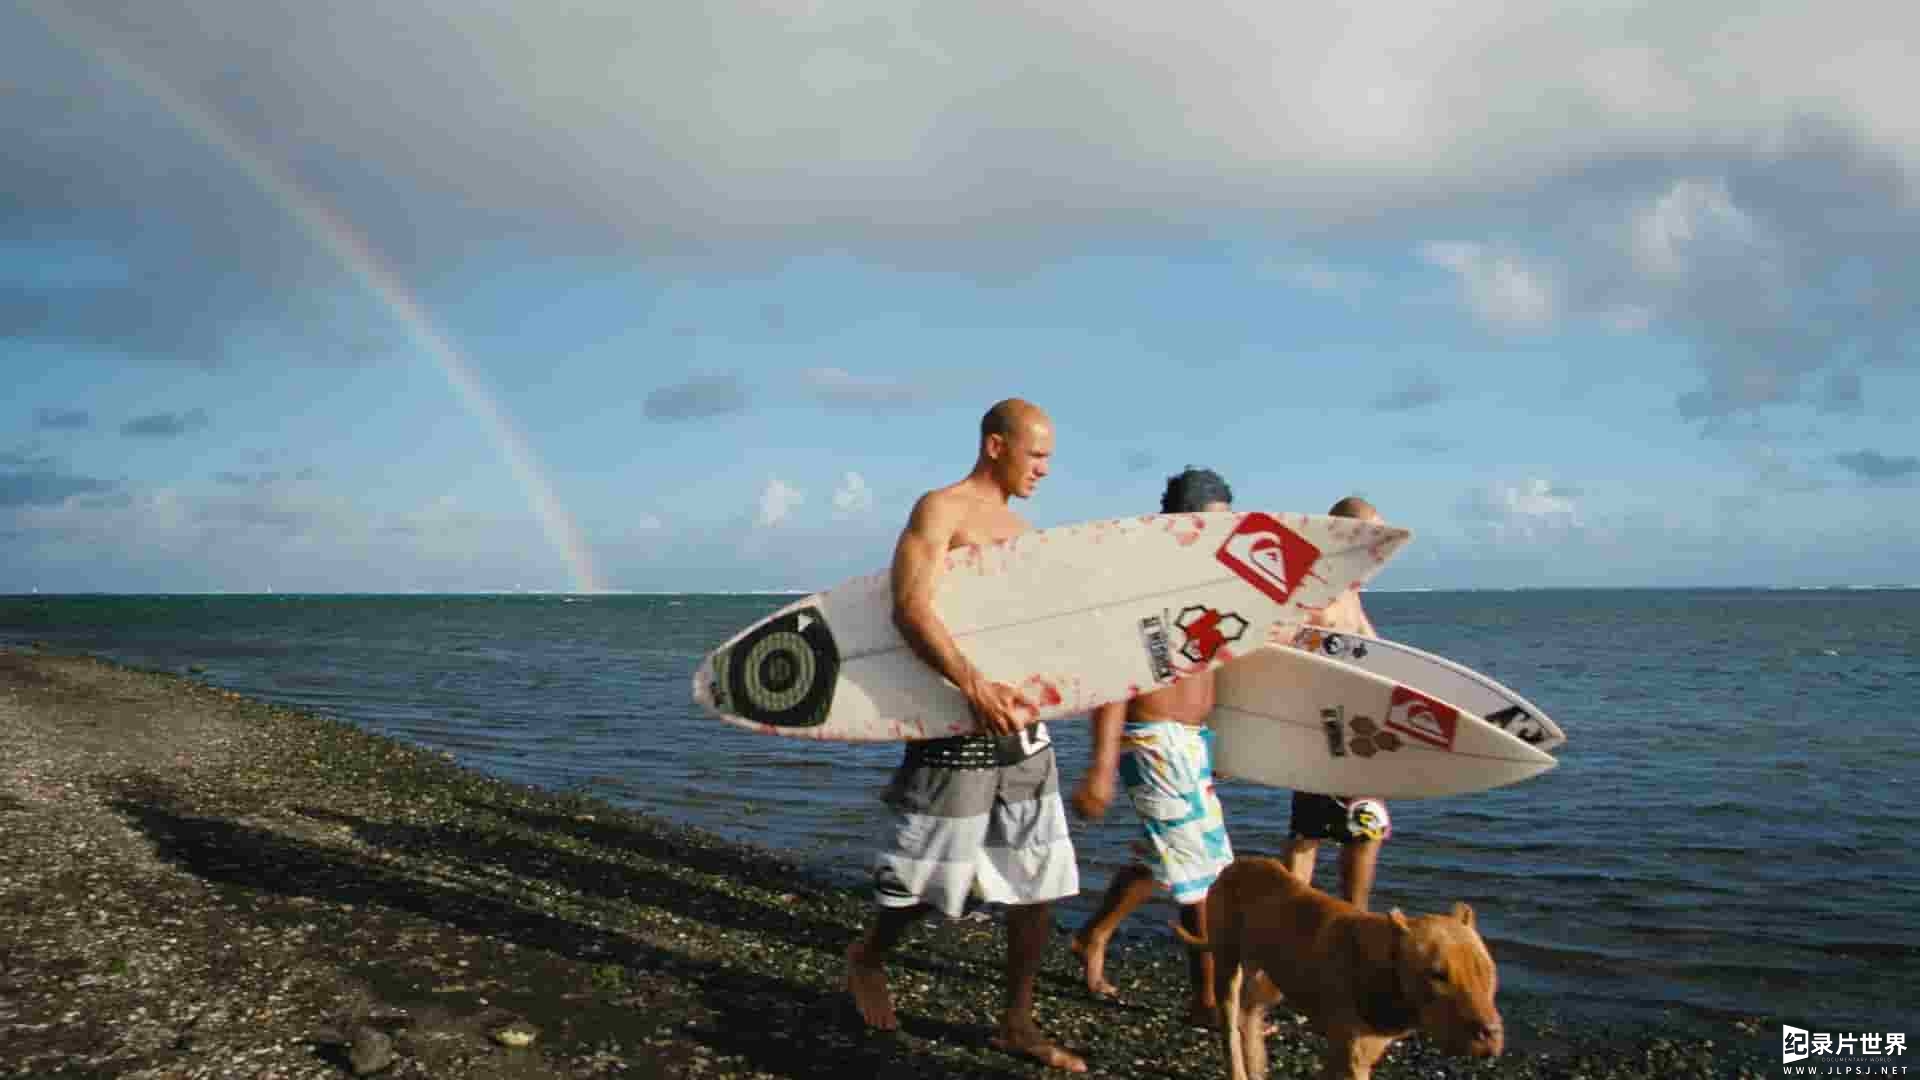 IMAX纪录片《塔希提巨浪 The Ultimate Wave Tahiti》全1集